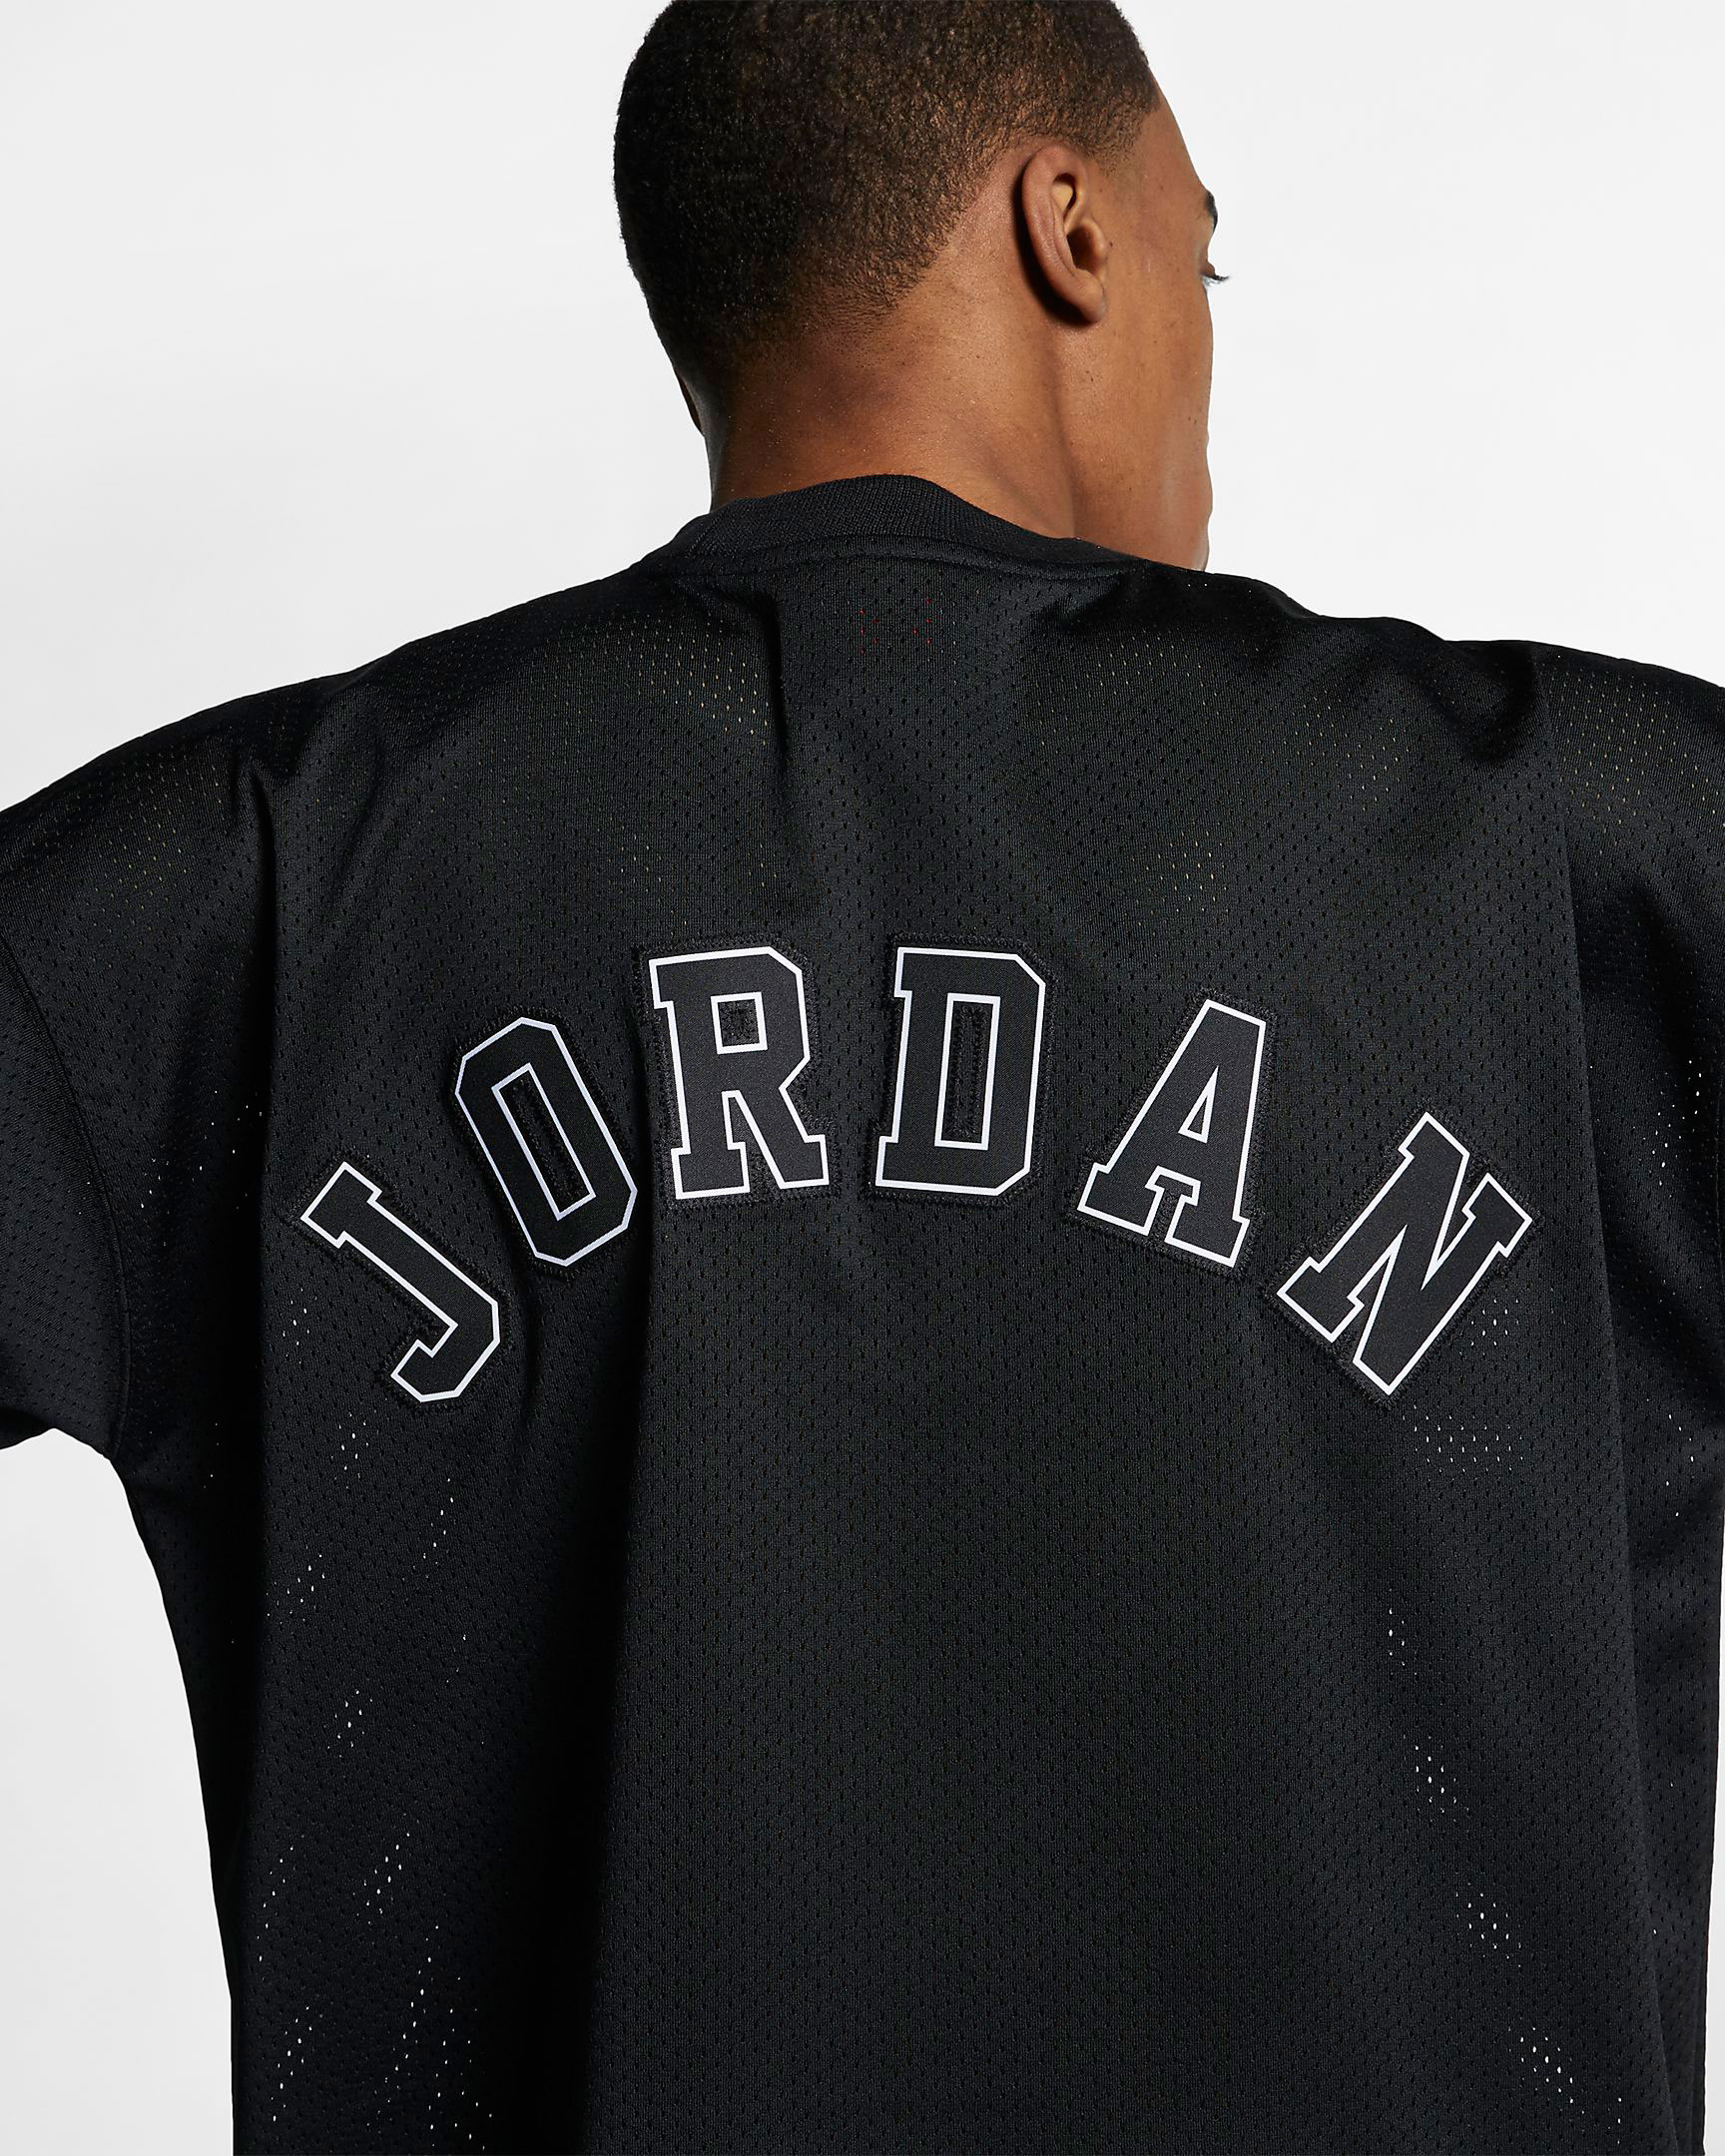 jordan 13 cap and gown shirts